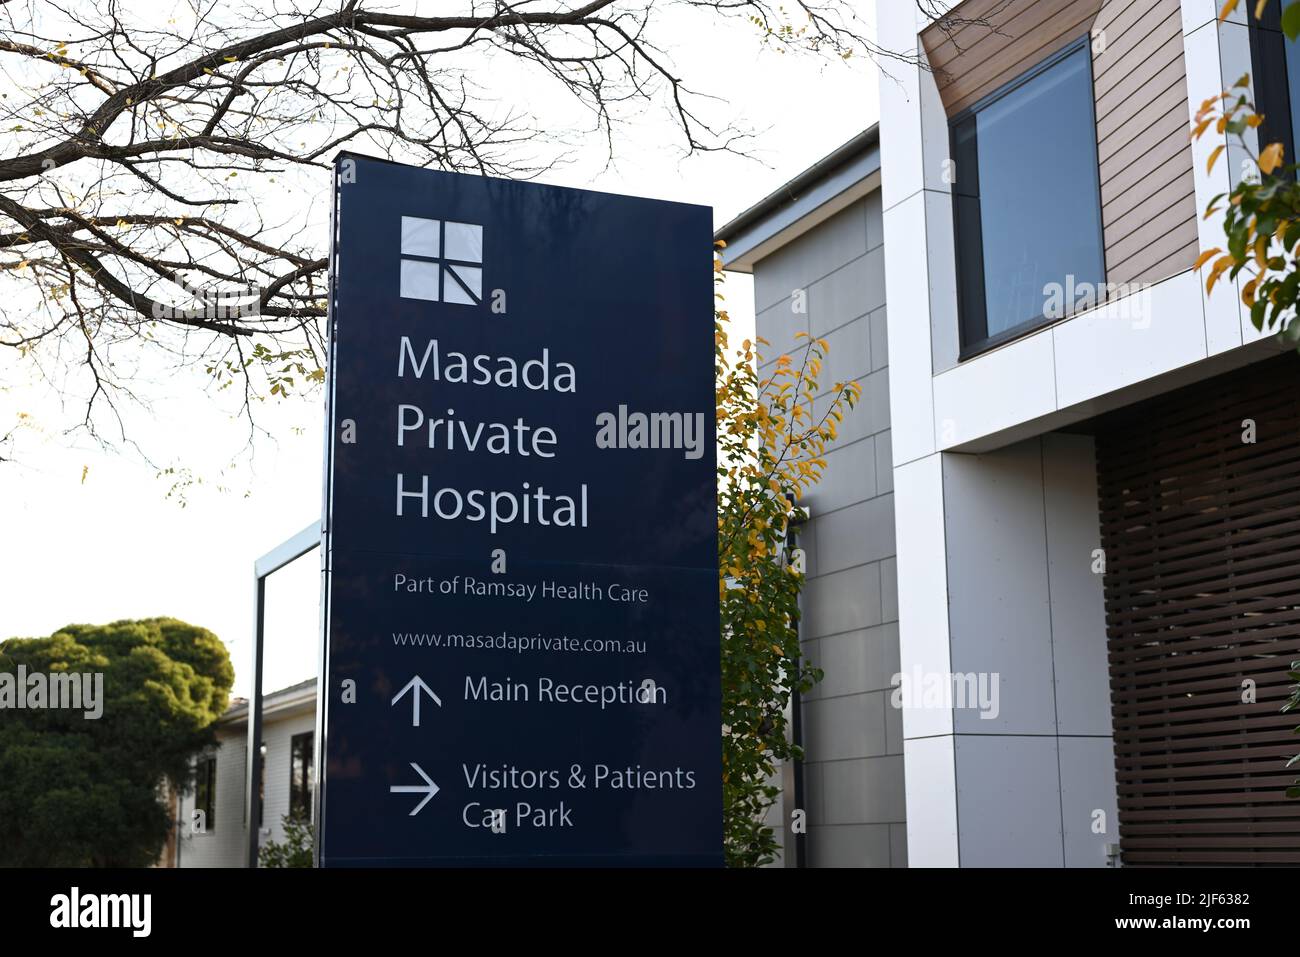 Panneau à l'extérieur de l'hôpital privé de Masada, qui fait partie des soins de santé de Ramsay, avec des arbres et des bâtiments d'hôpital en arrière-plan Banque D'Images